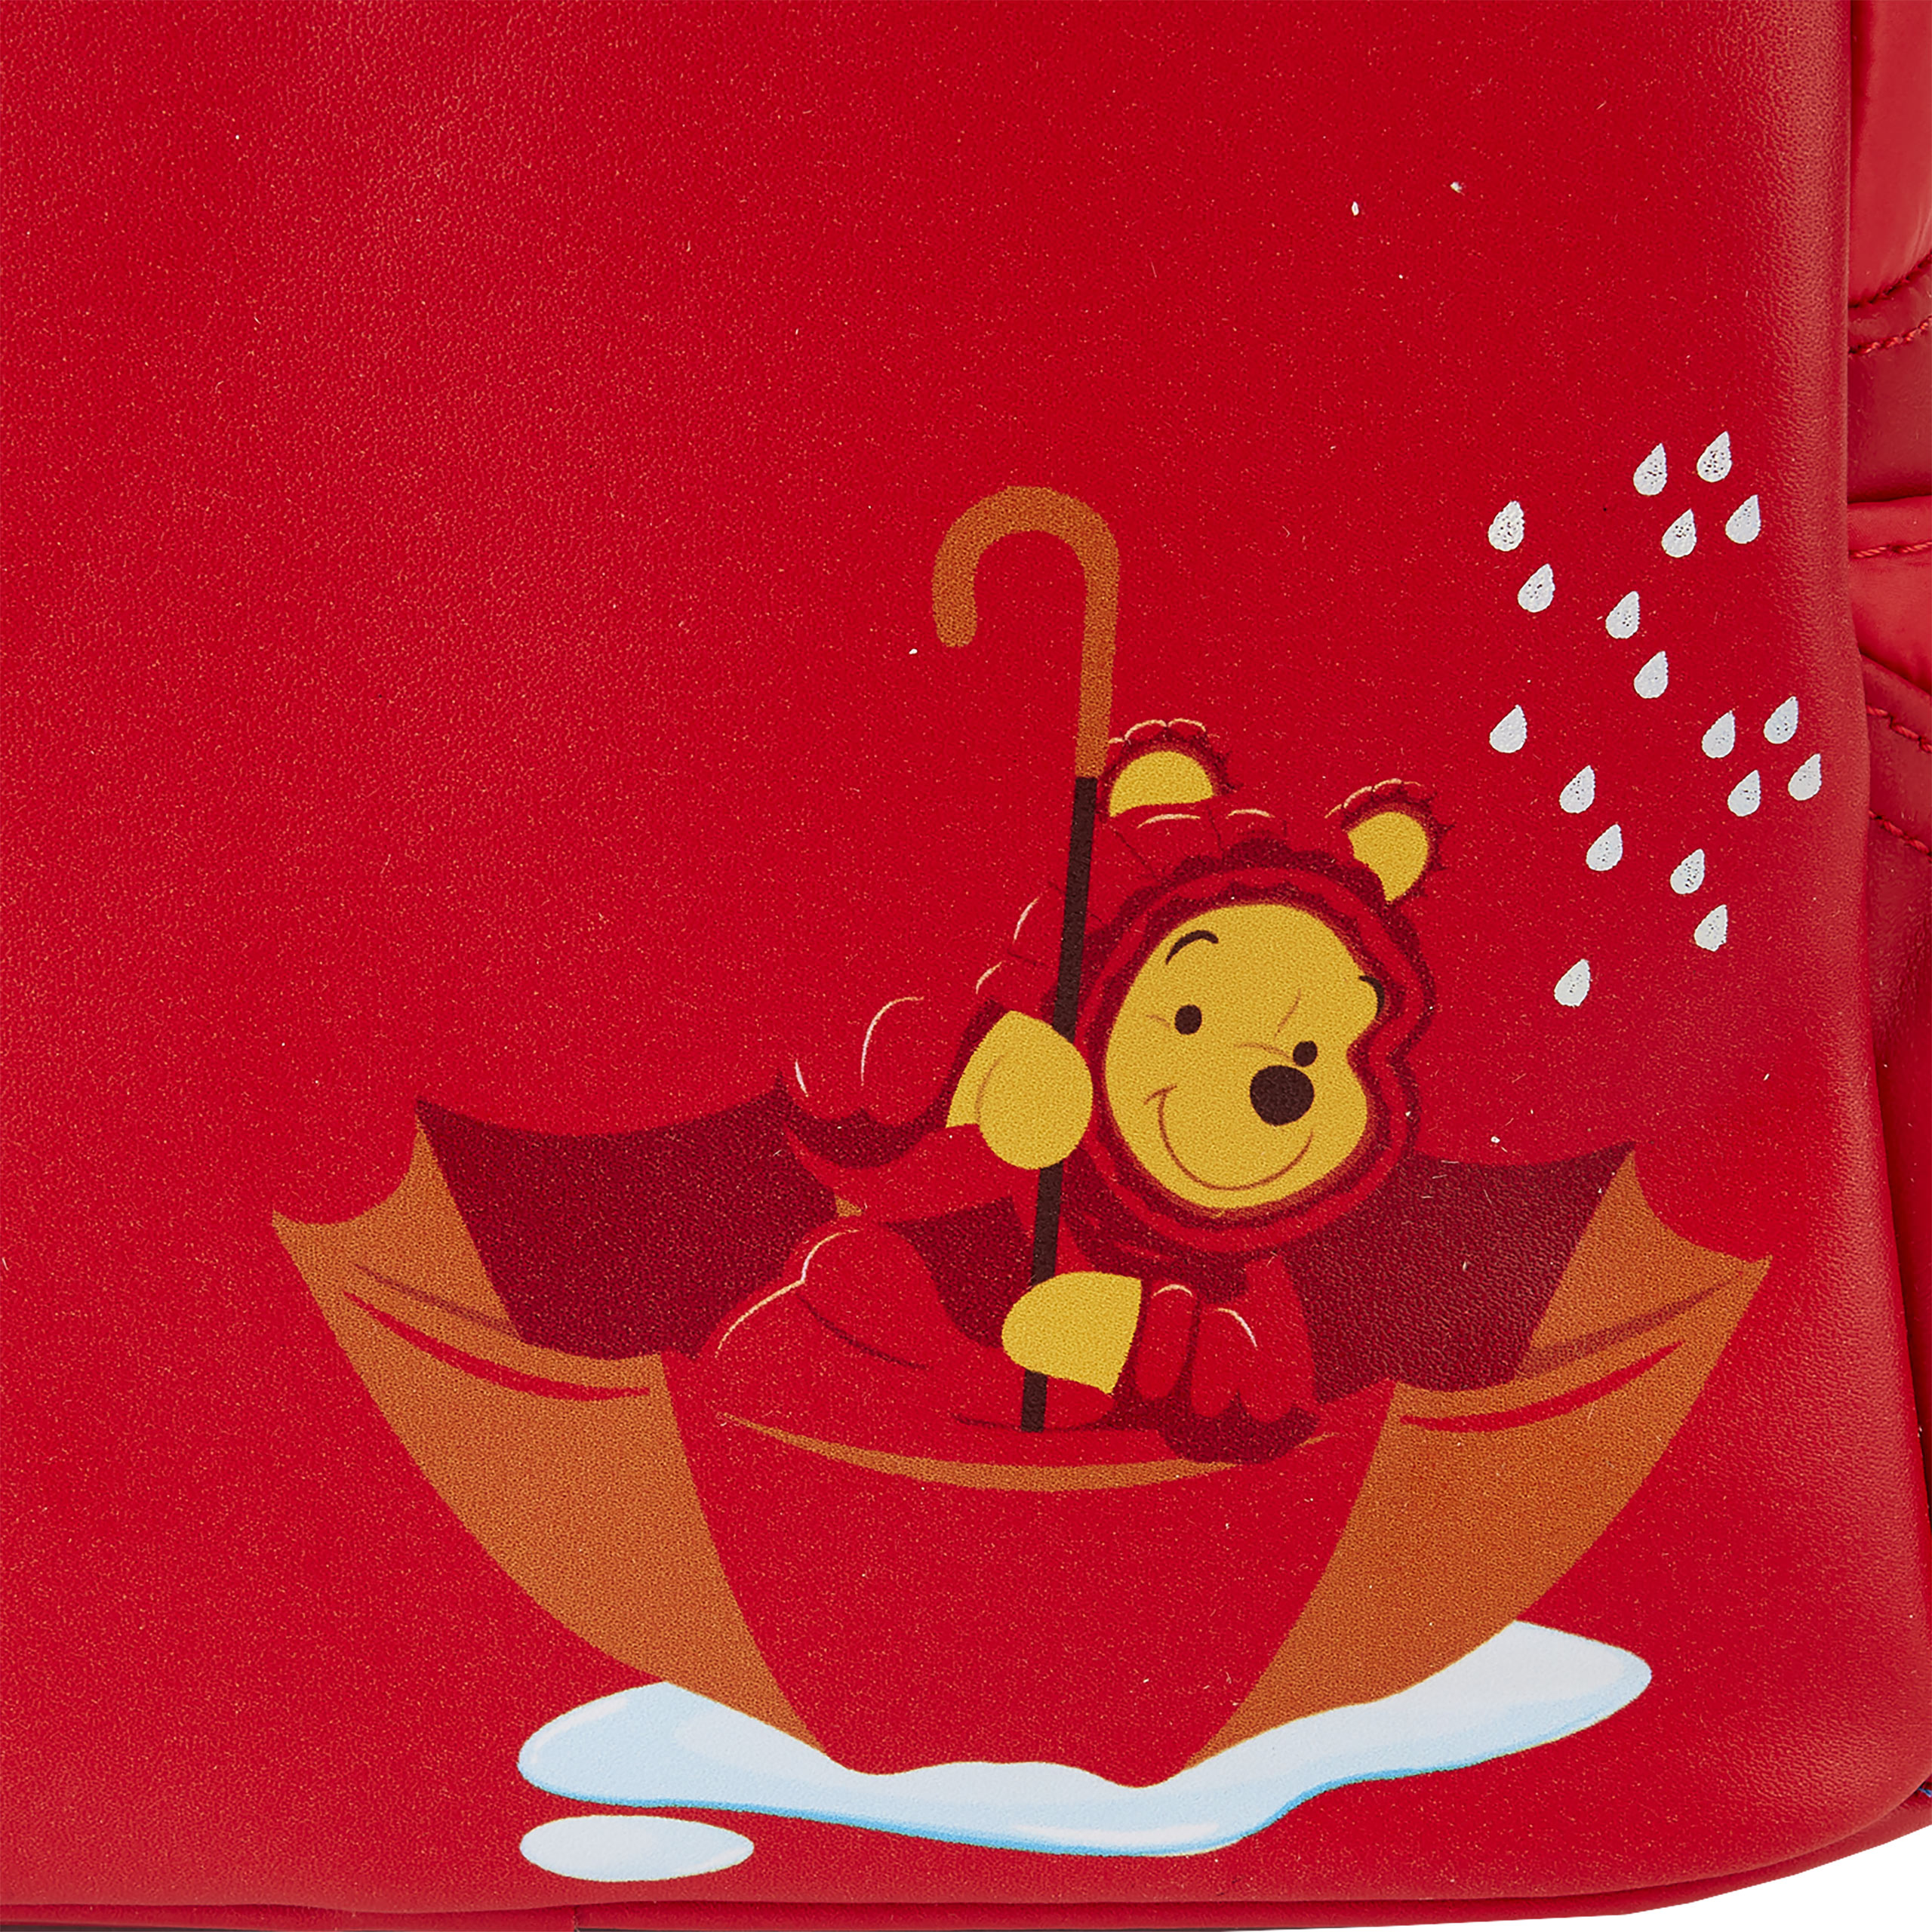 Winnie l'ourson - Mini sac à dos Cosplay avec doudoune rouge